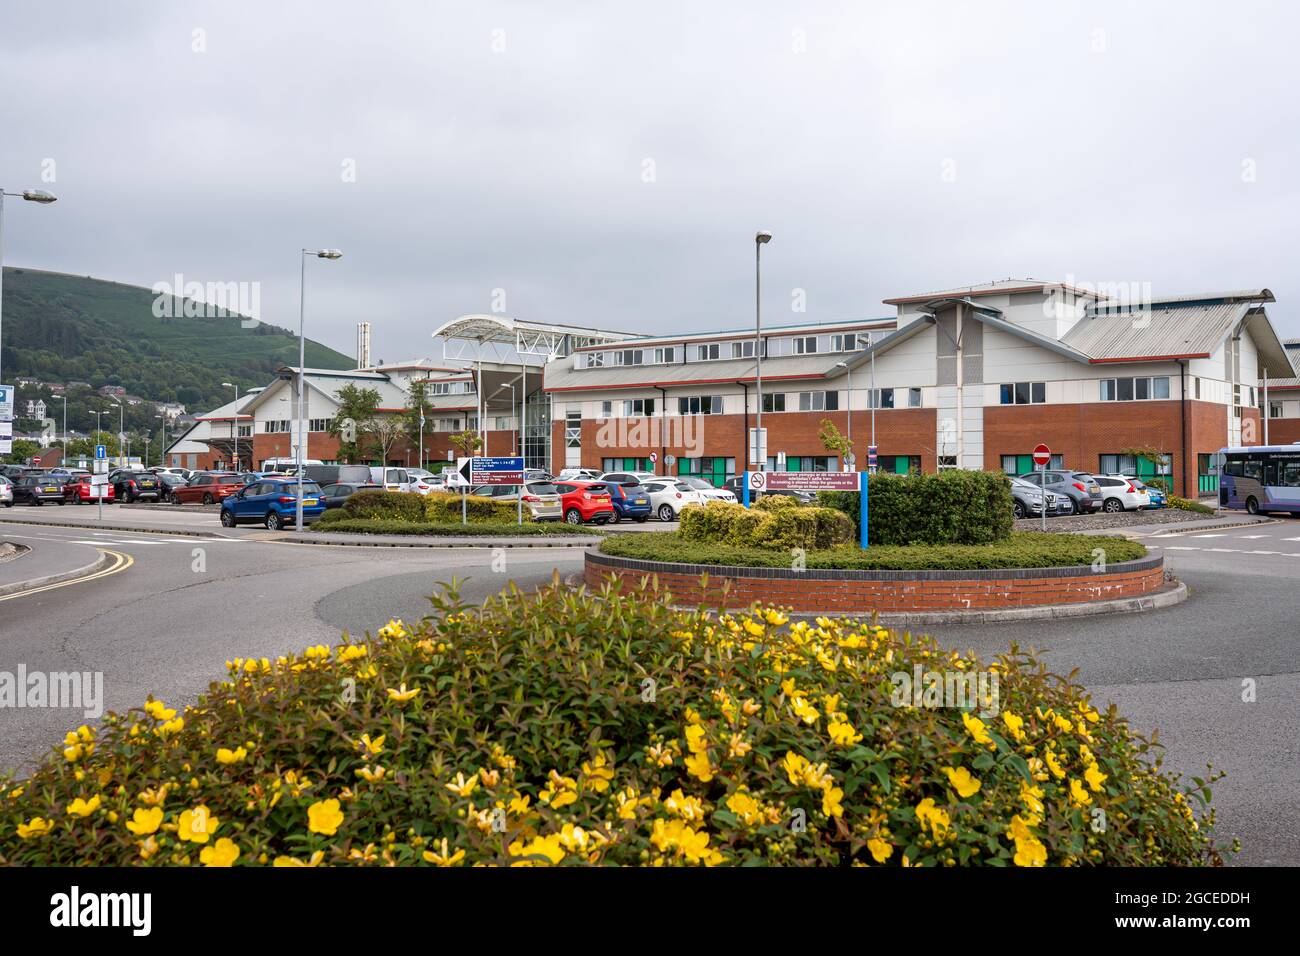 Port Talbot, Reino Unido - 4 de julio de 2021: Neath Port Talbot Hospital, sur de Gales, Reino Unido. Es administrado por la Junta de Salud de la Universidad de Swansea Bay. Ambulancias aparcadas fuera del hospital Foto de stock